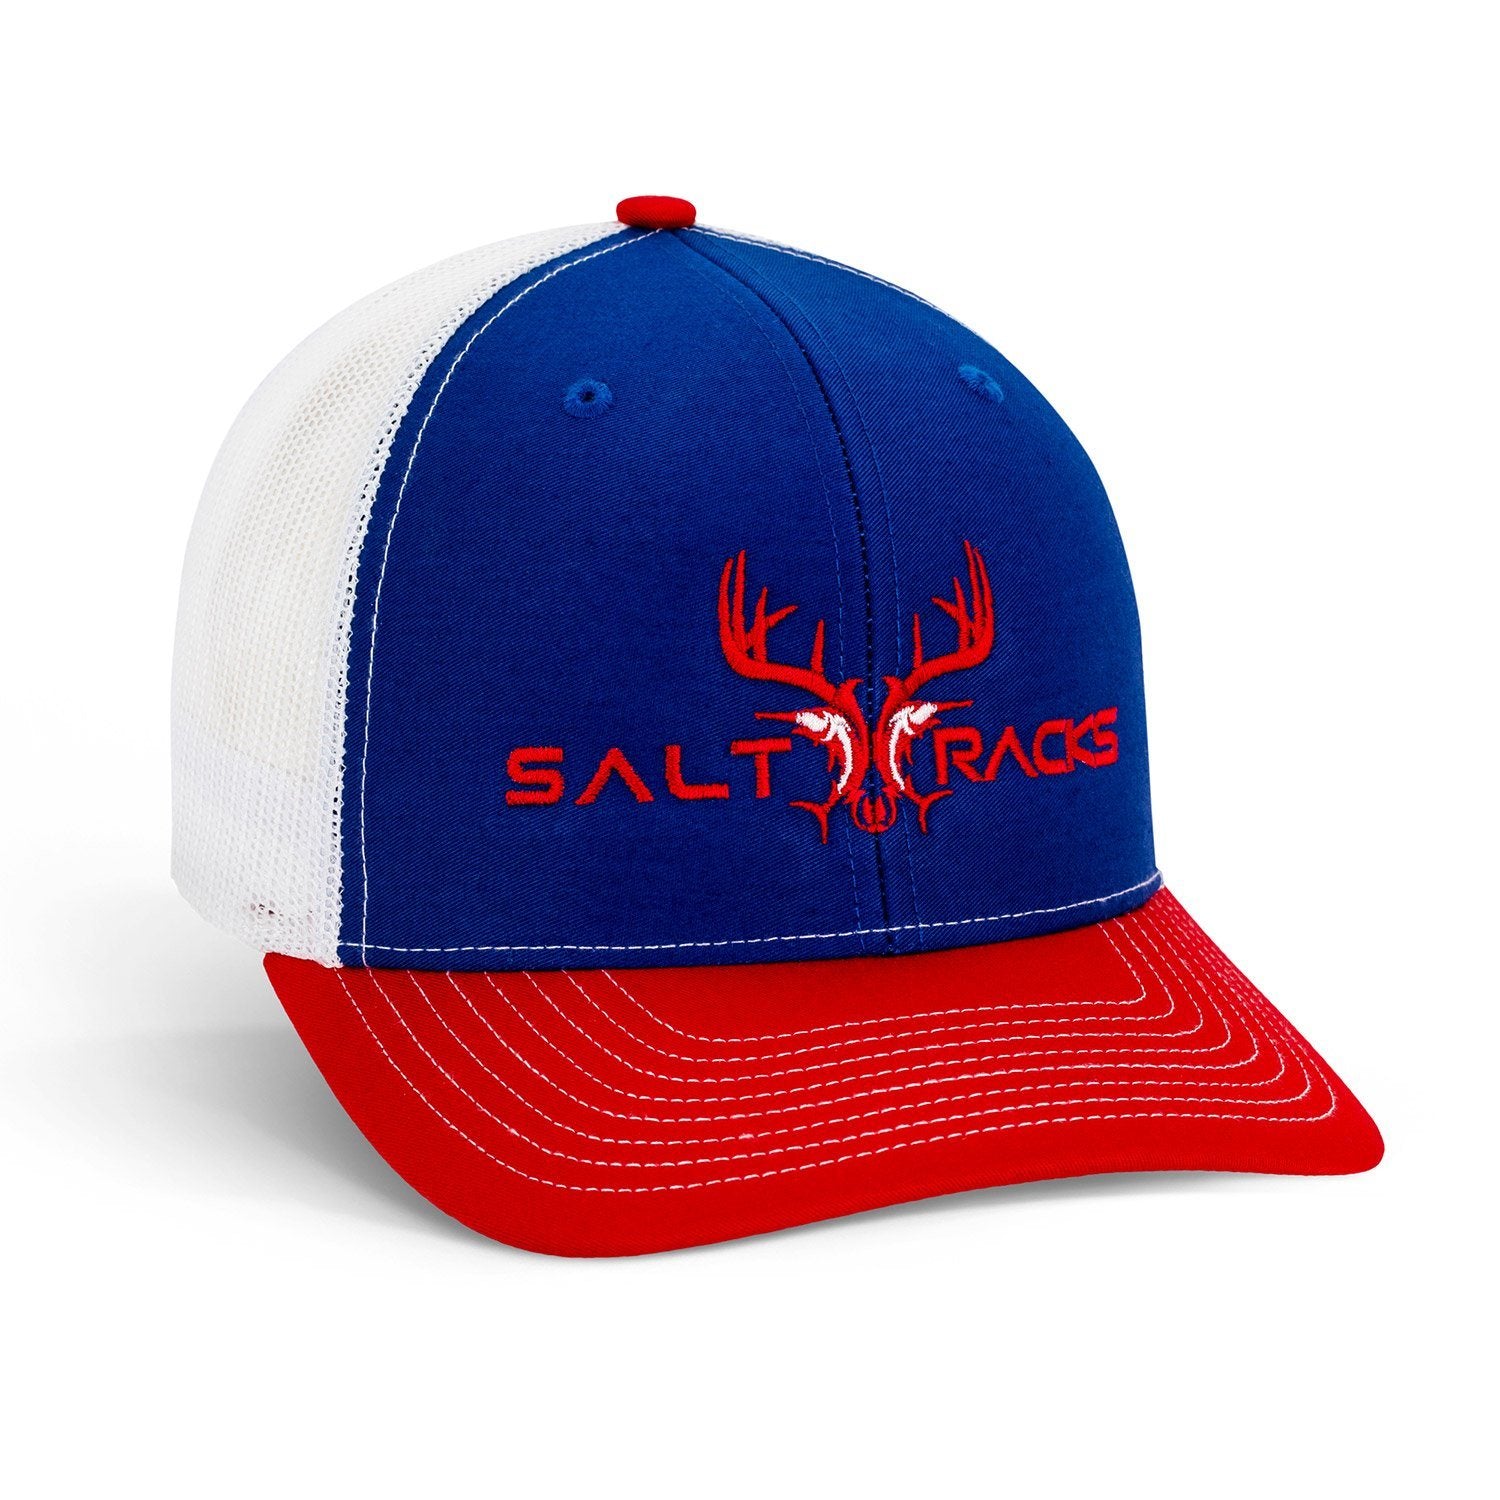 Cap – Saltracks Red/Blue/White